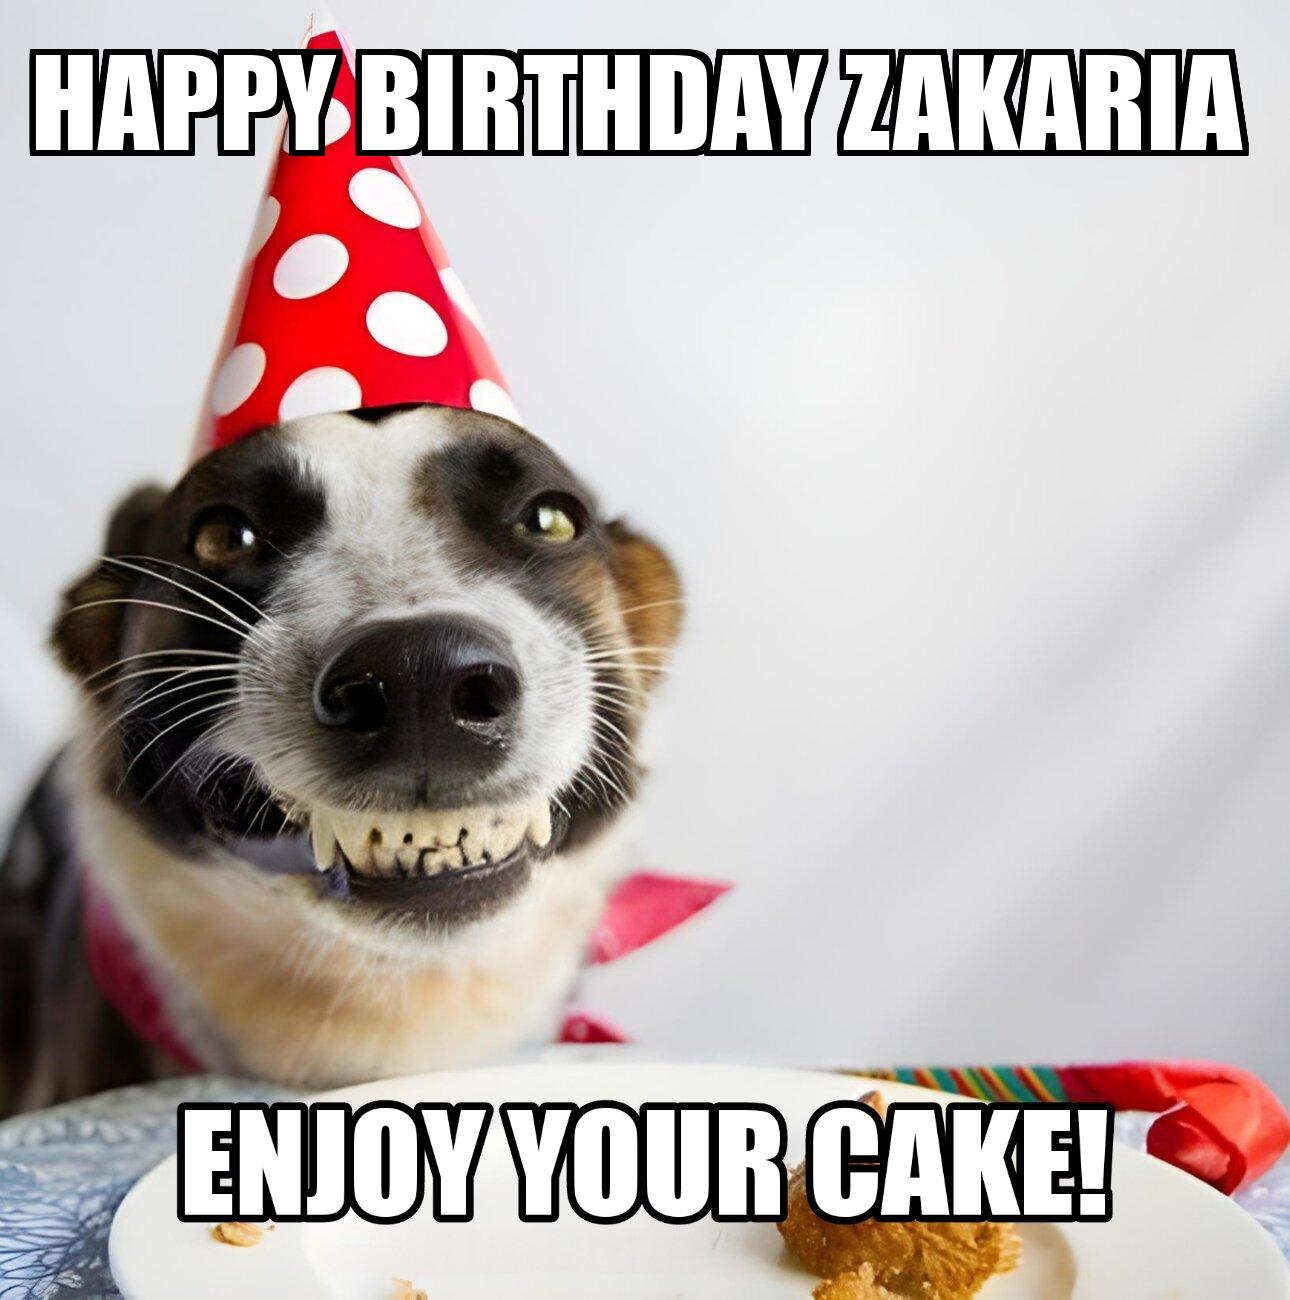 Happy Birthday Zakaria Enjoy Your Cake Dog Meme